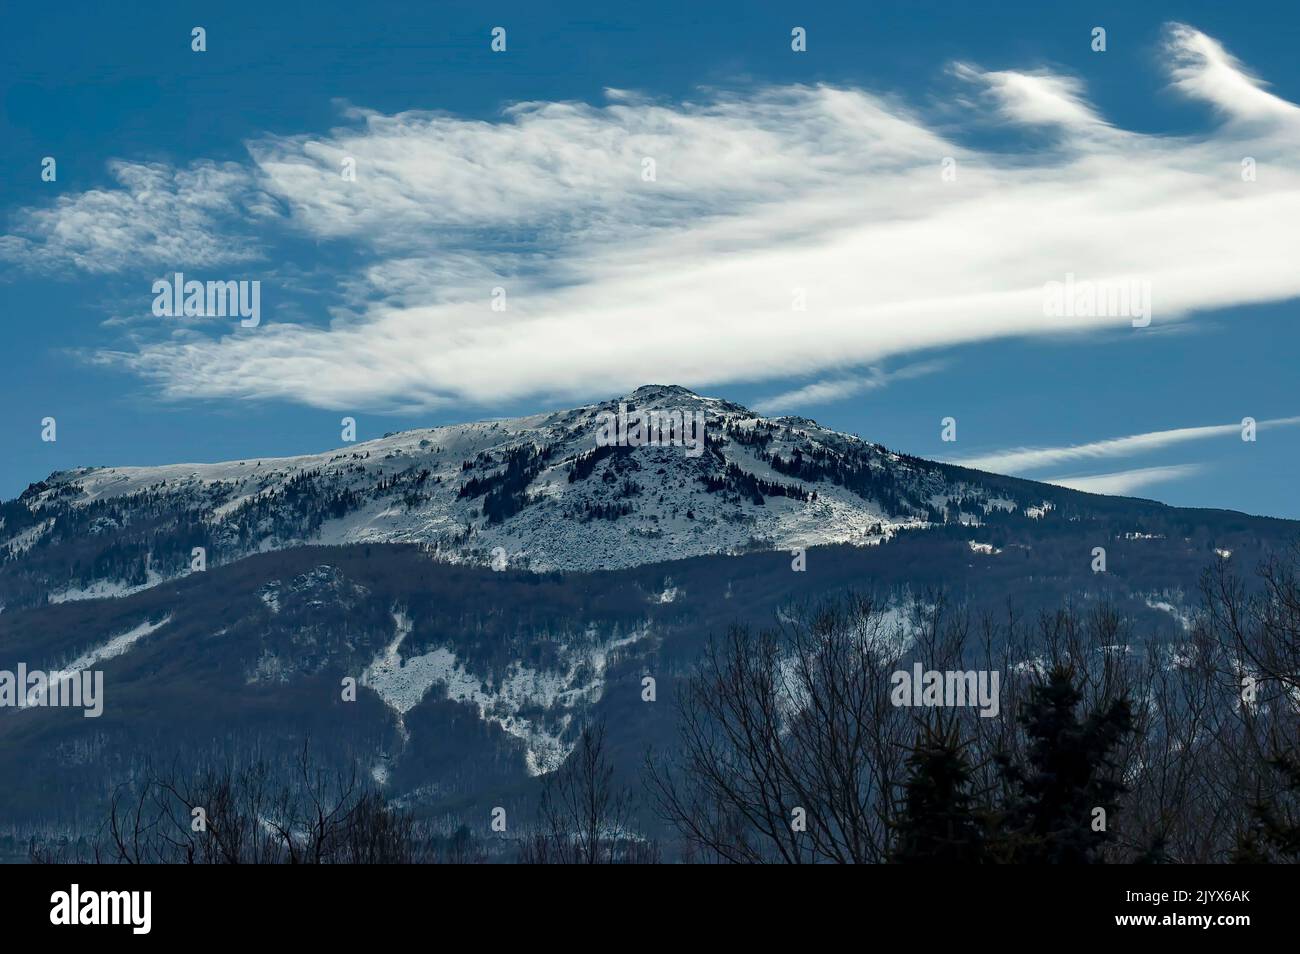 Winter view of Vitosha Mountain on the outskirts of Sofia, Bulgaria Stock Photo